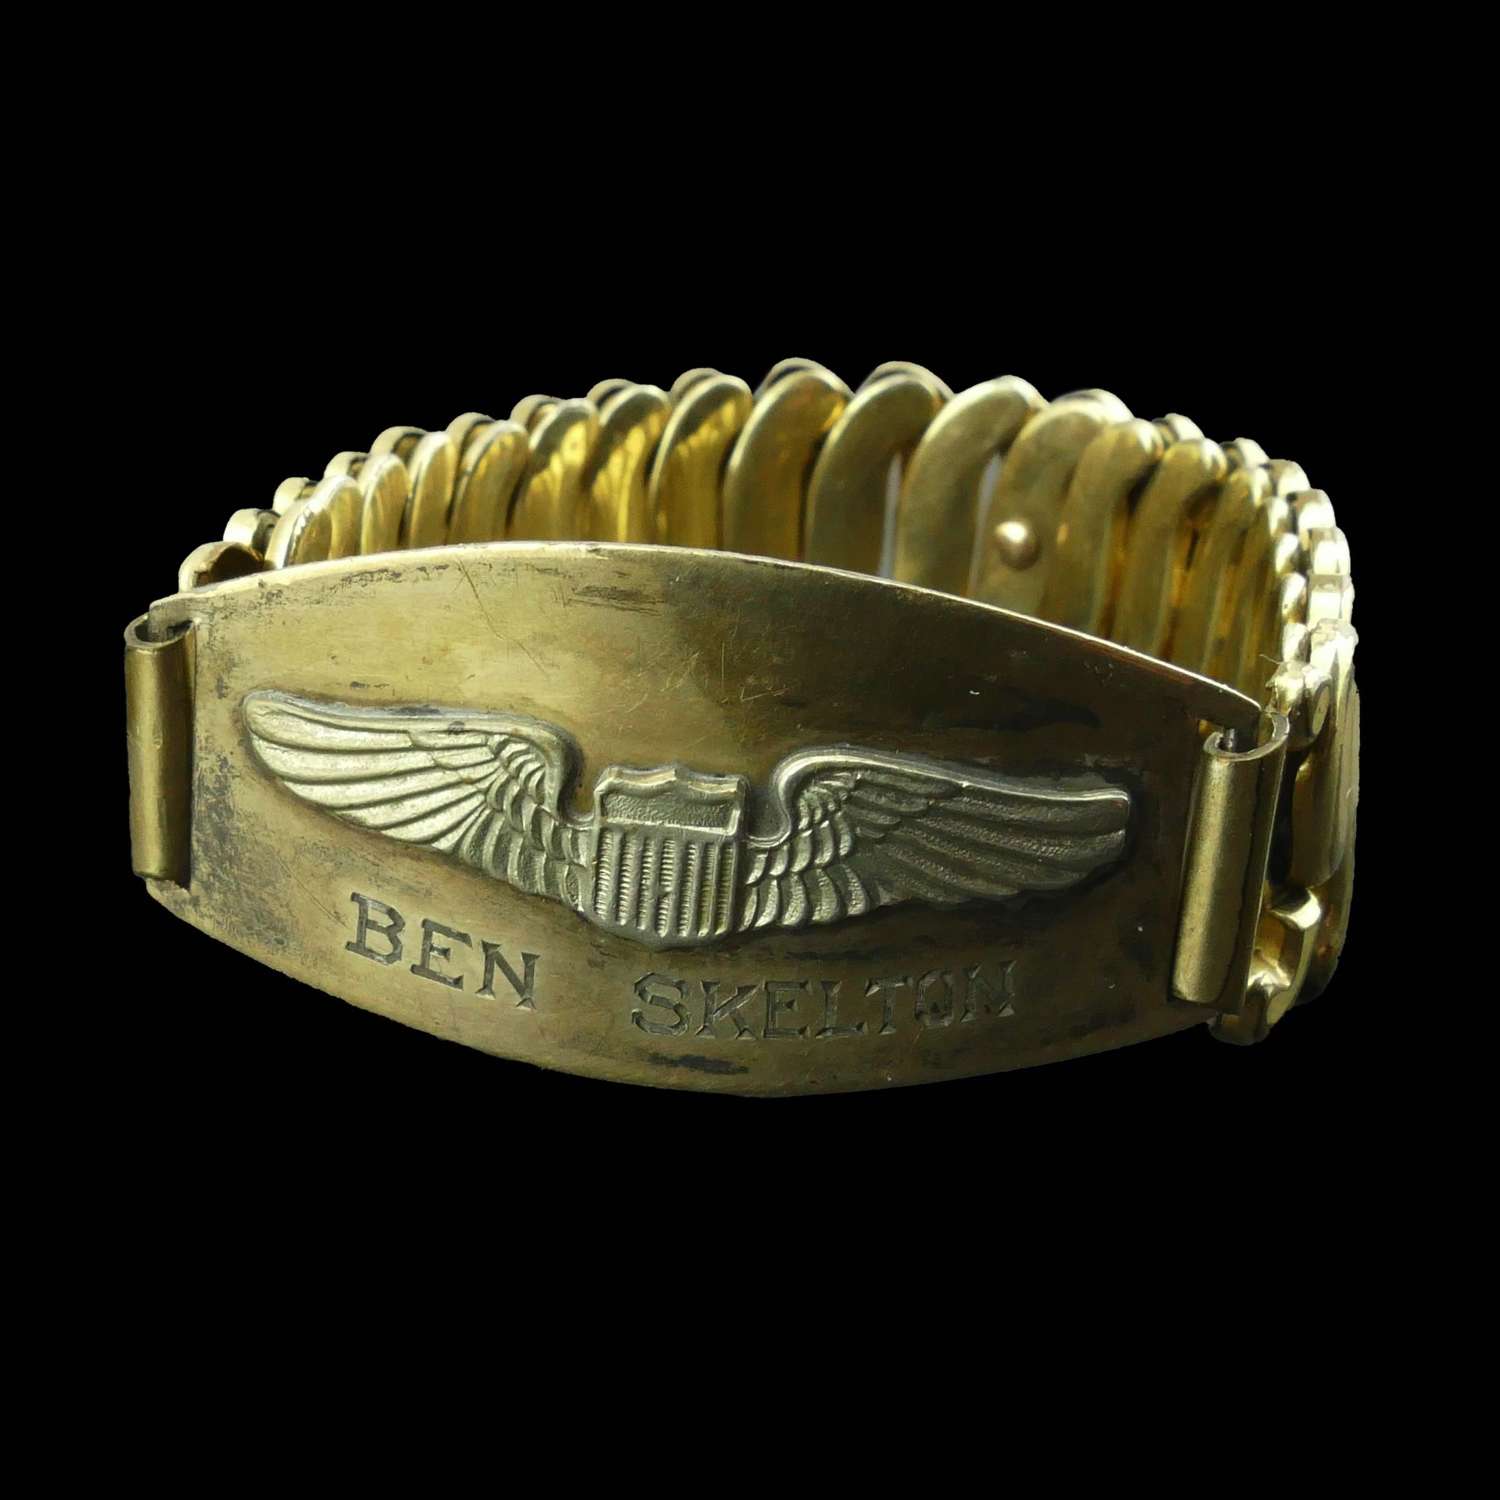 USAAF Pilot's bracelet, named, c.1942